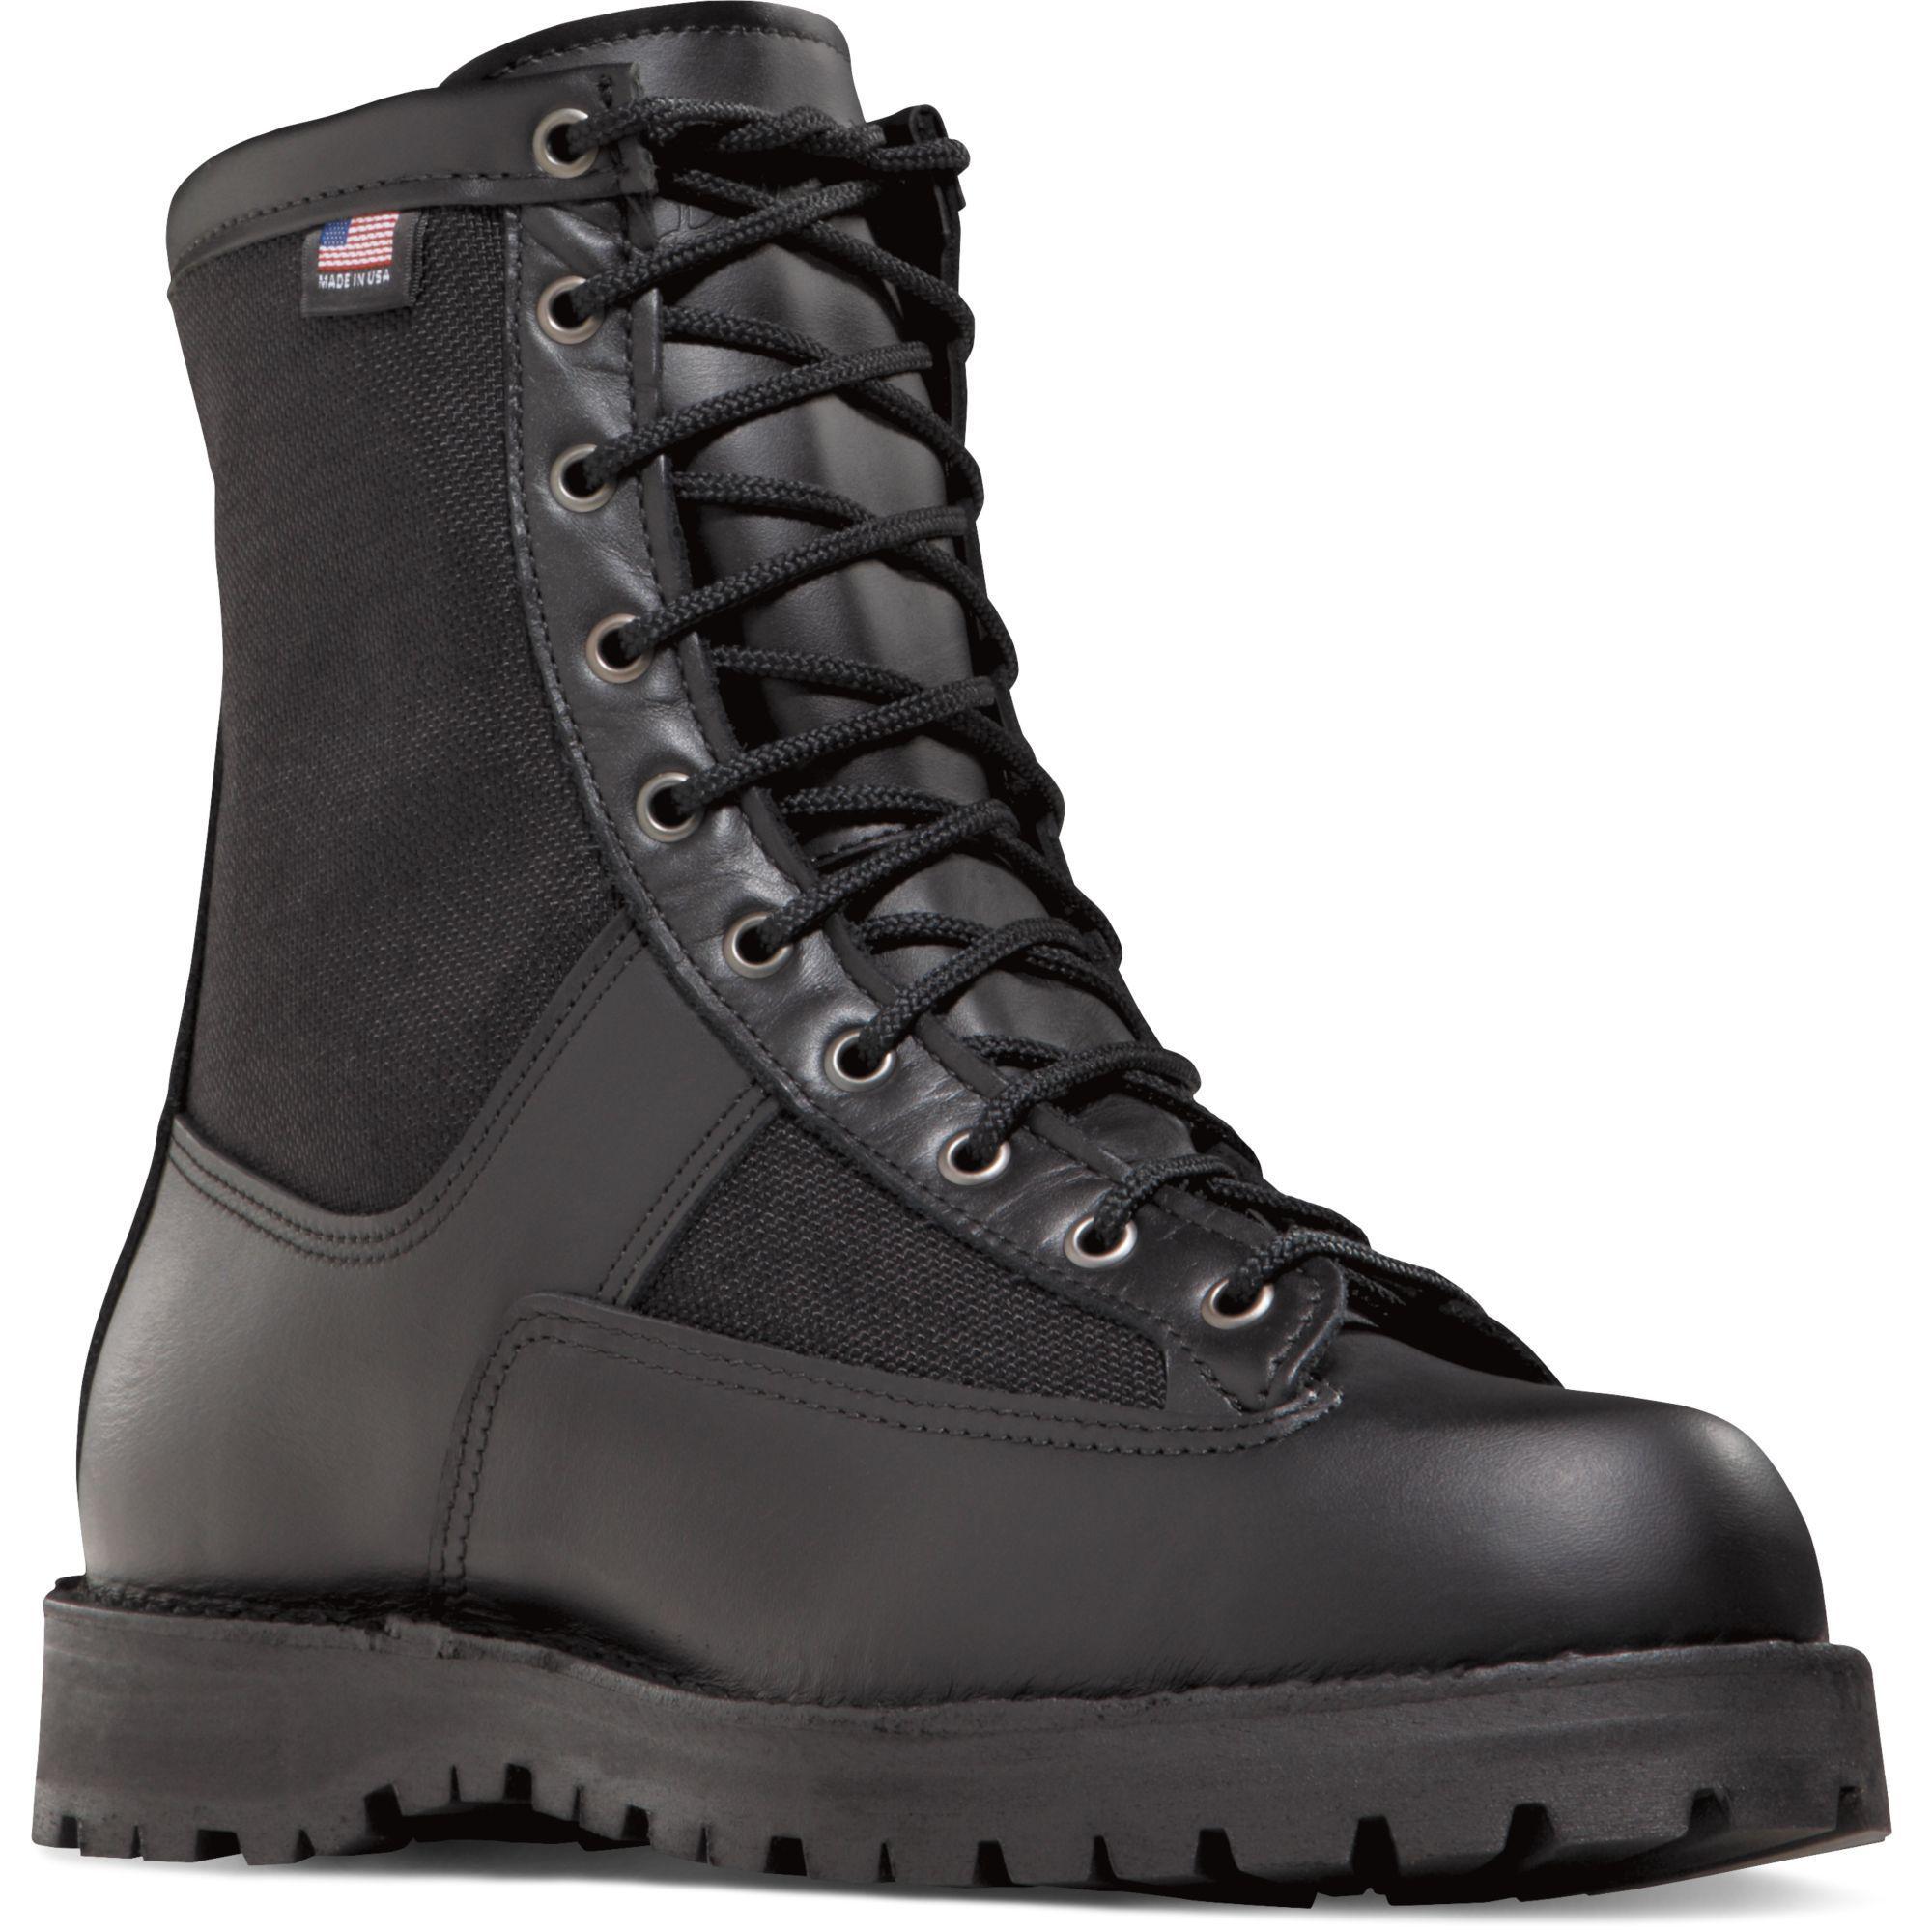 Danner Men's Acadia USA Made 8" Waterproof Duty Boot - Black - 21210 7 / Medium / Black - Overlook Boots